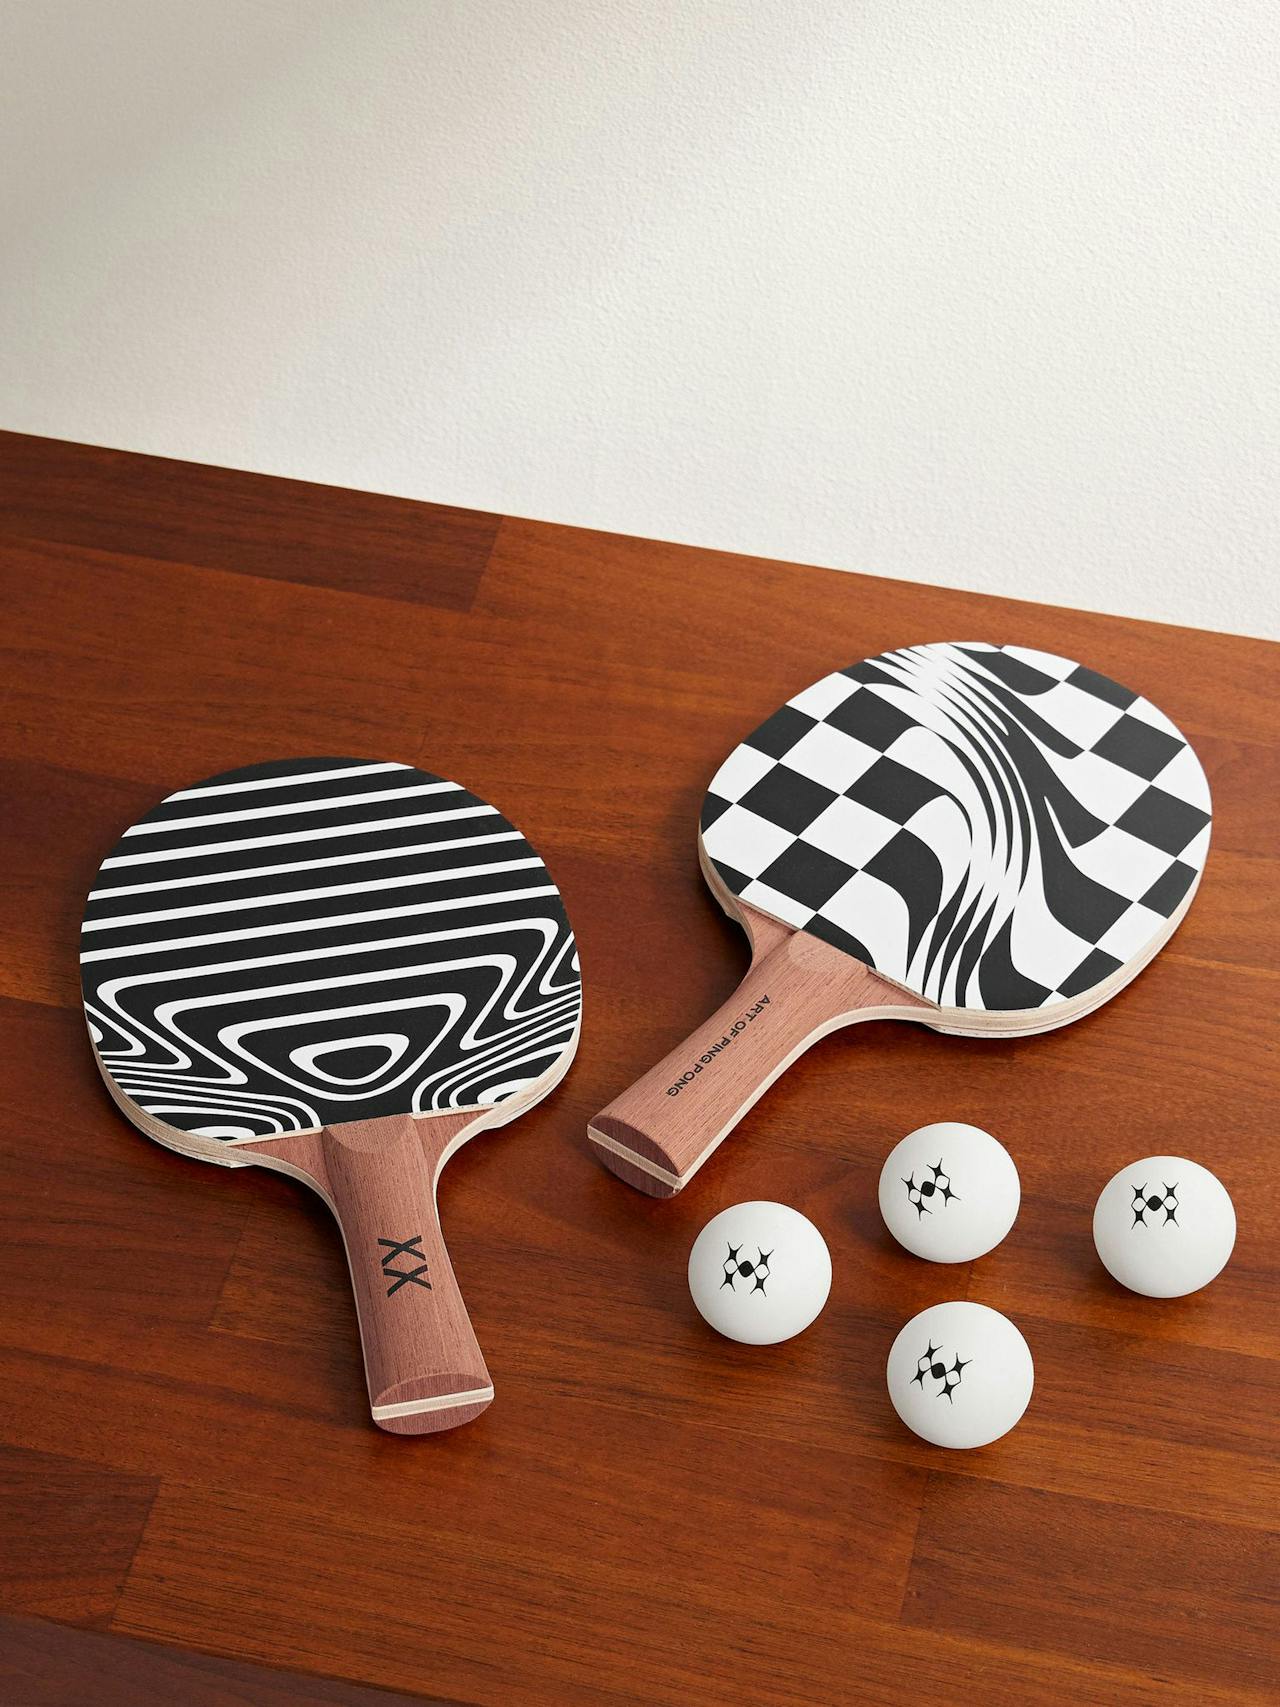 Ping pong set